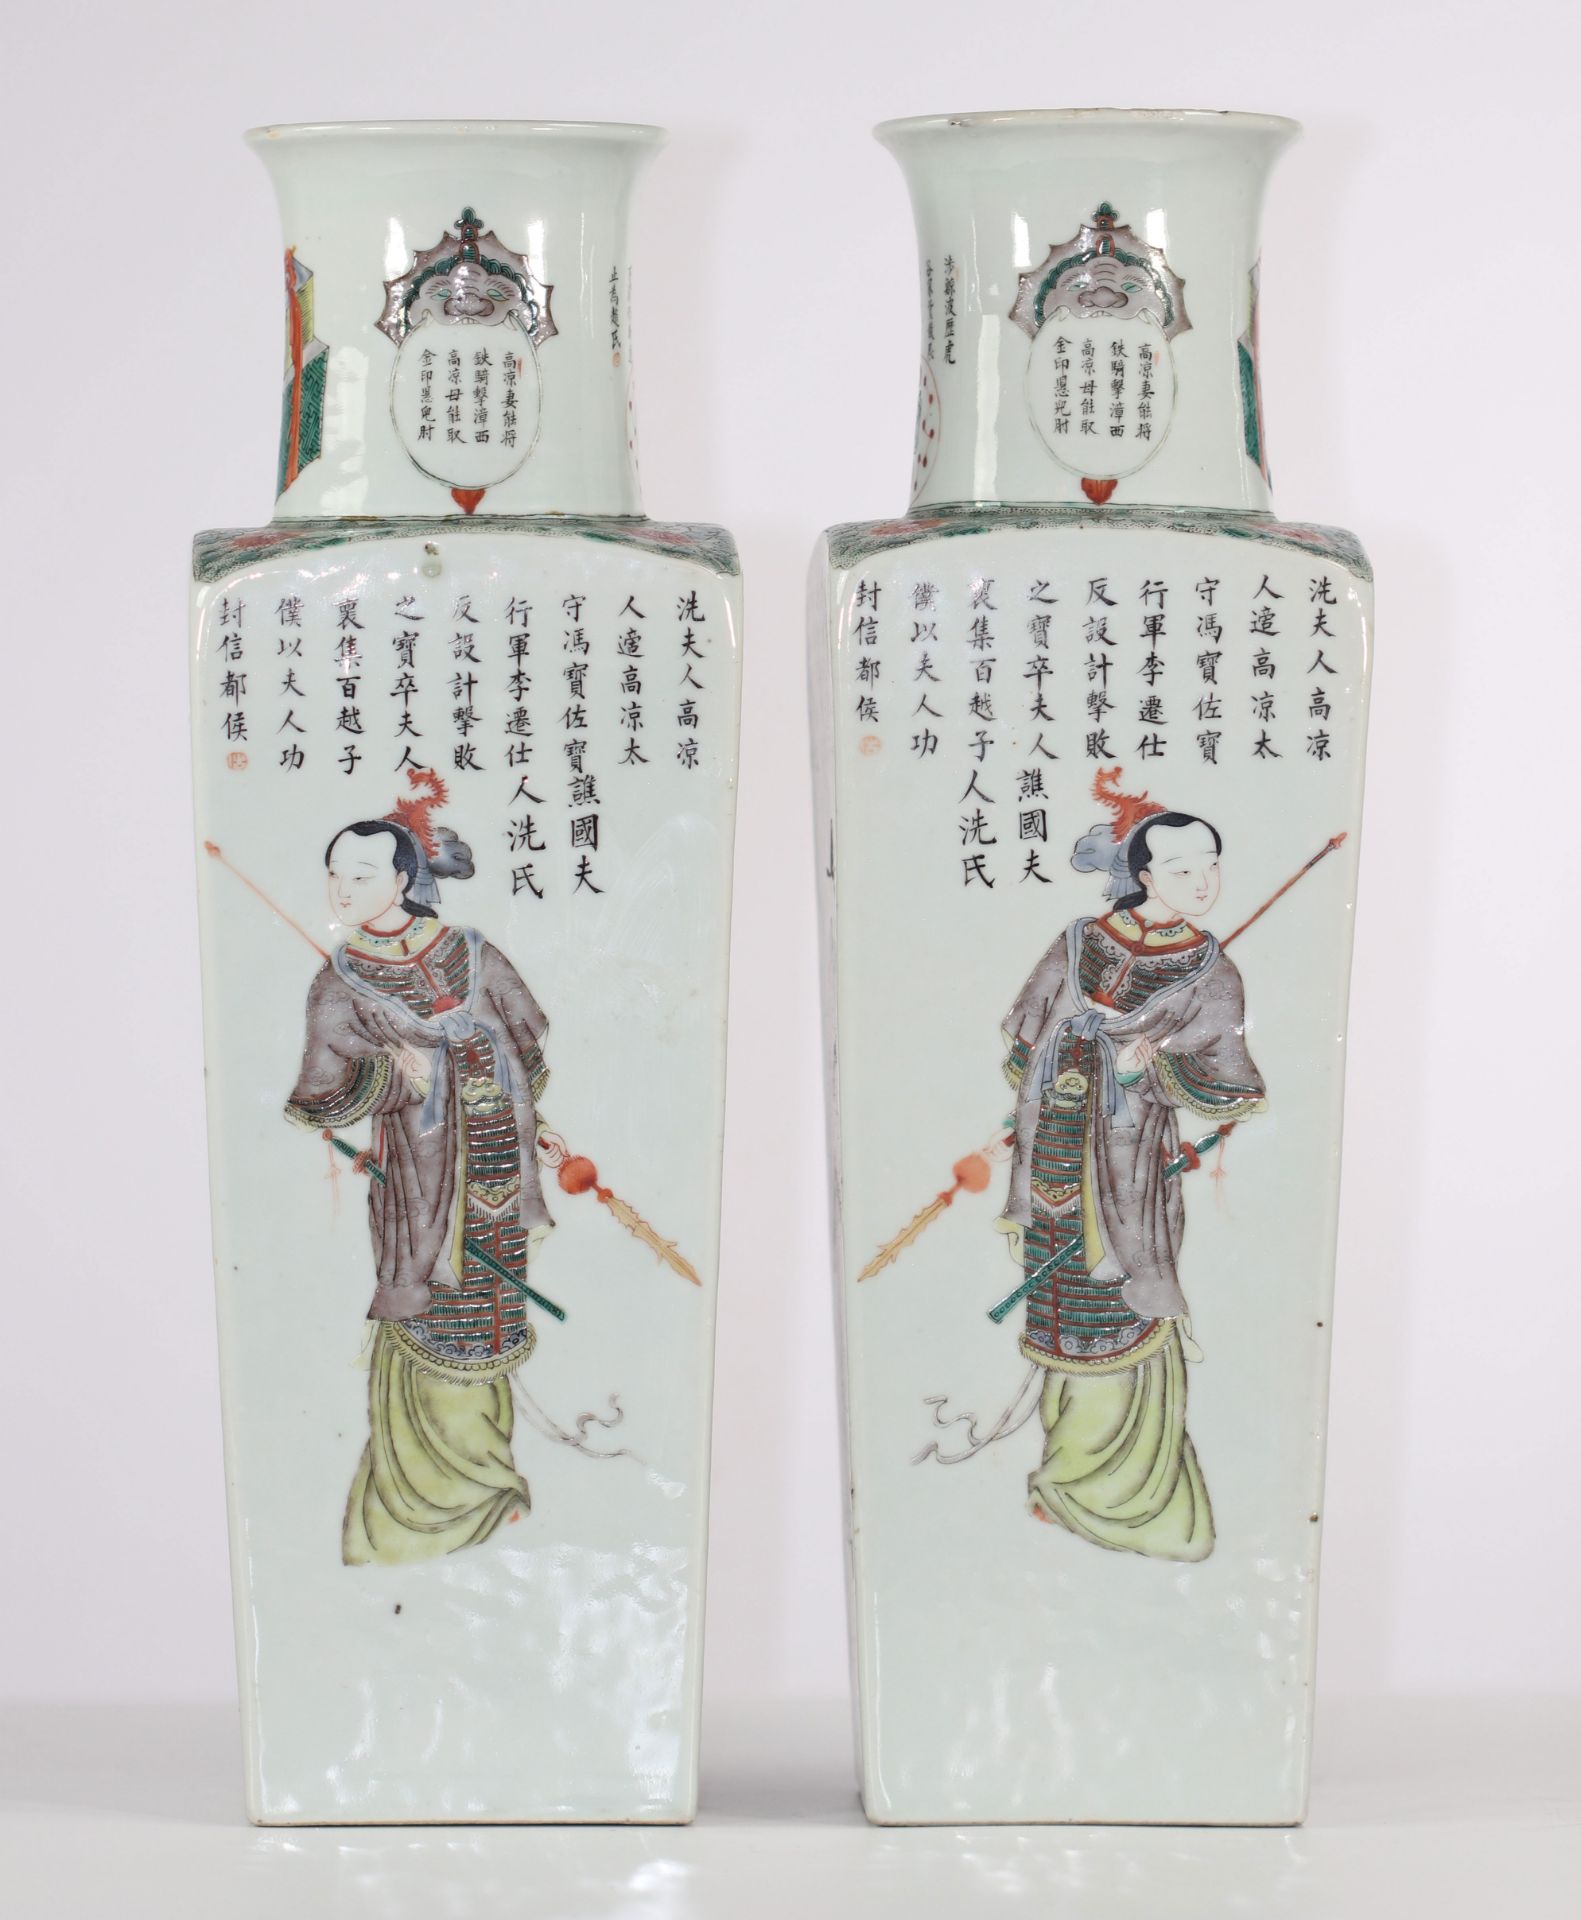 Pair of quadrangular porcelain vases, Wu Shang Pu decor, 19th century China. - Image 4 of 6